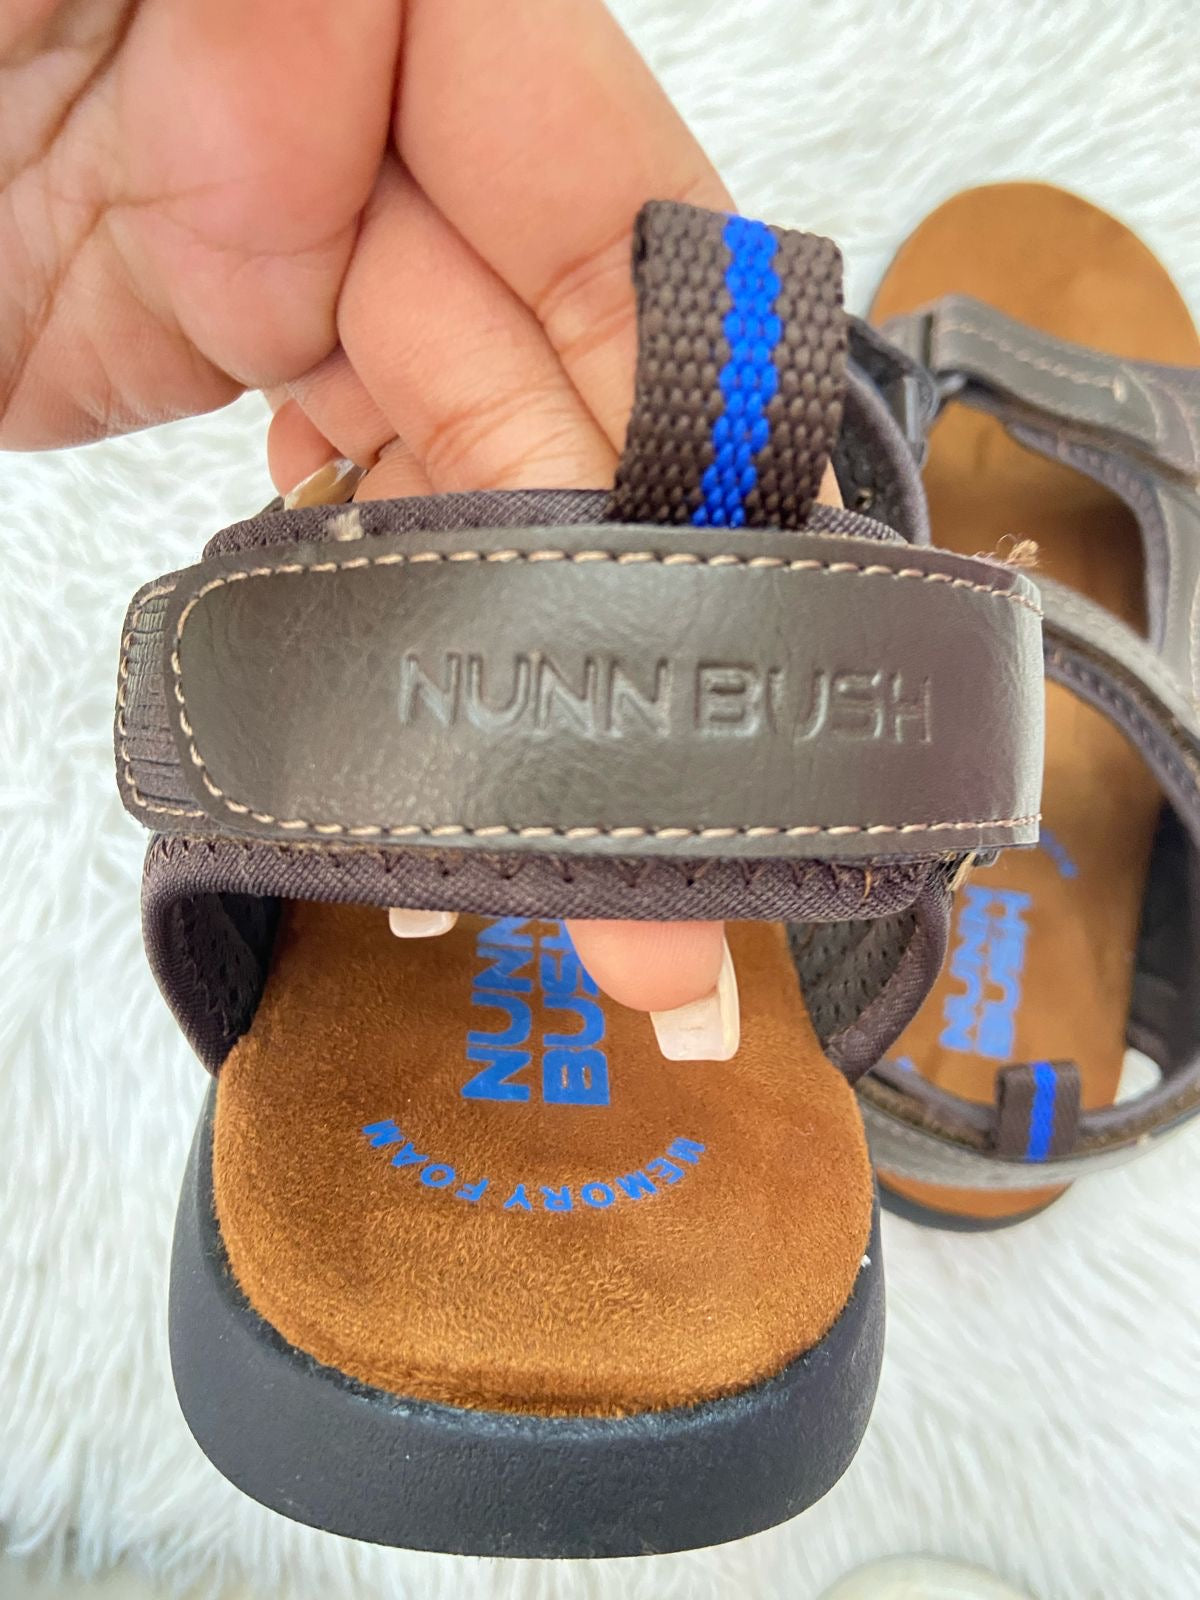 Sandalias NUNN BUSH Original marrón claro con logotipo azul.